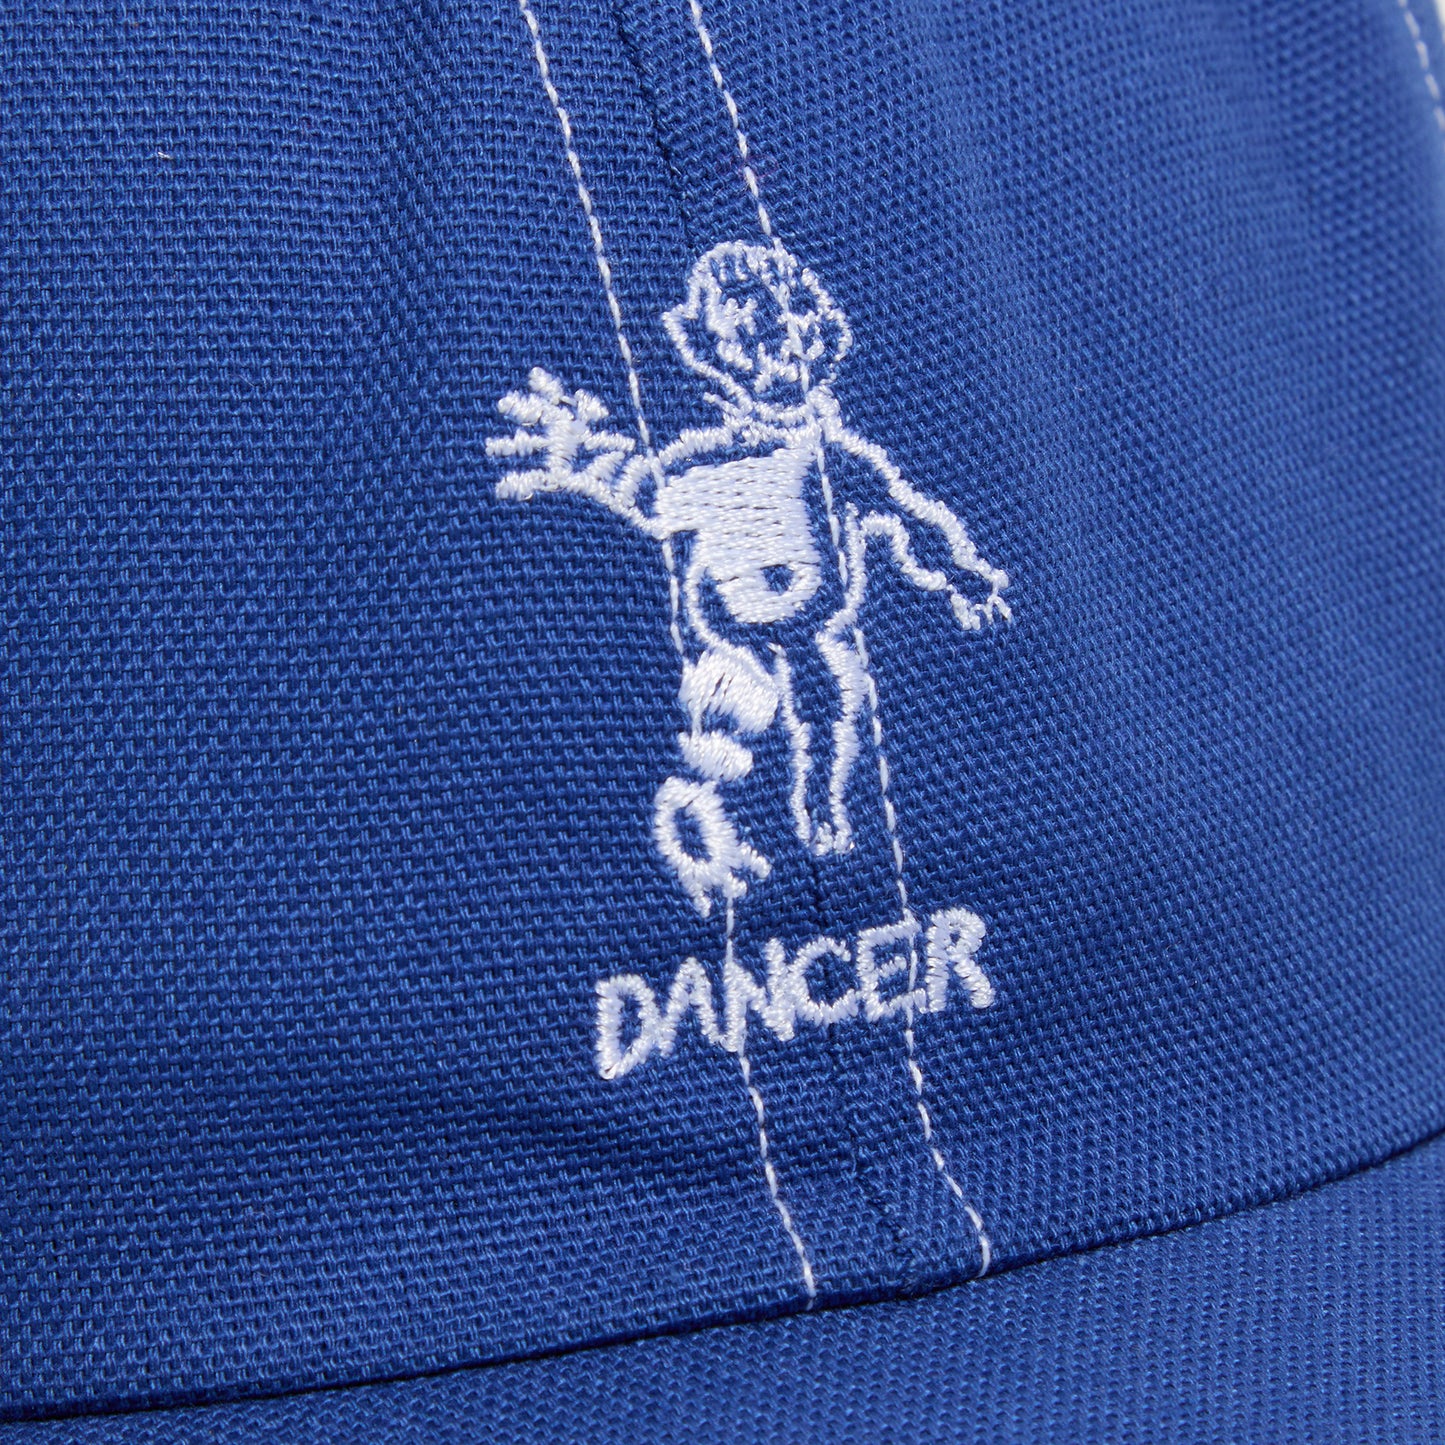 Dancer OG Logo Dad Cap (Royal/White)